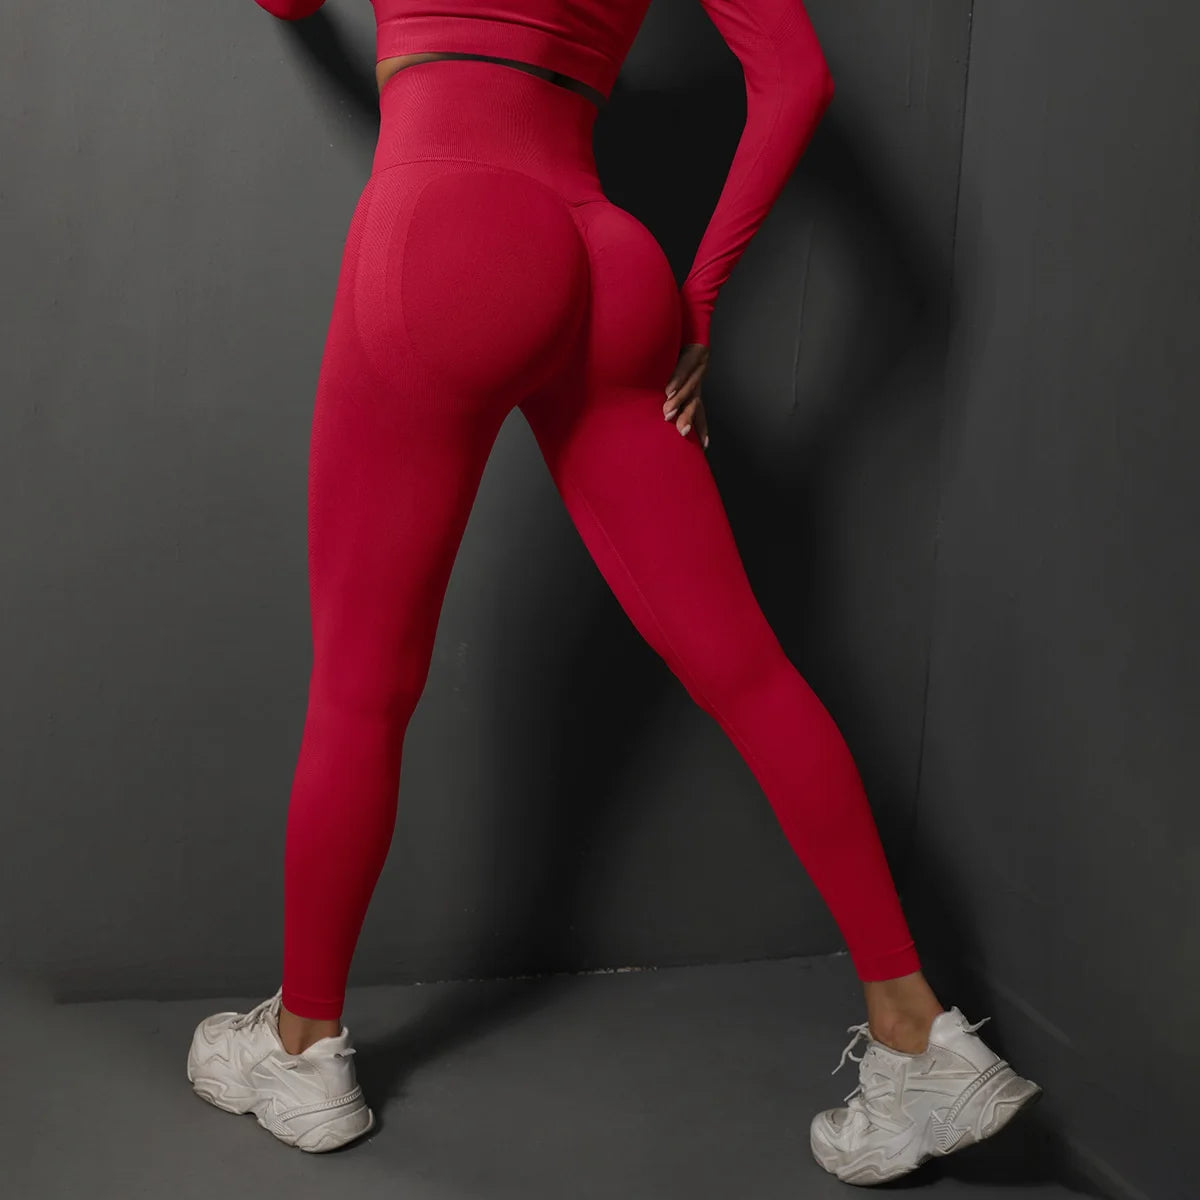 red yoga leggings